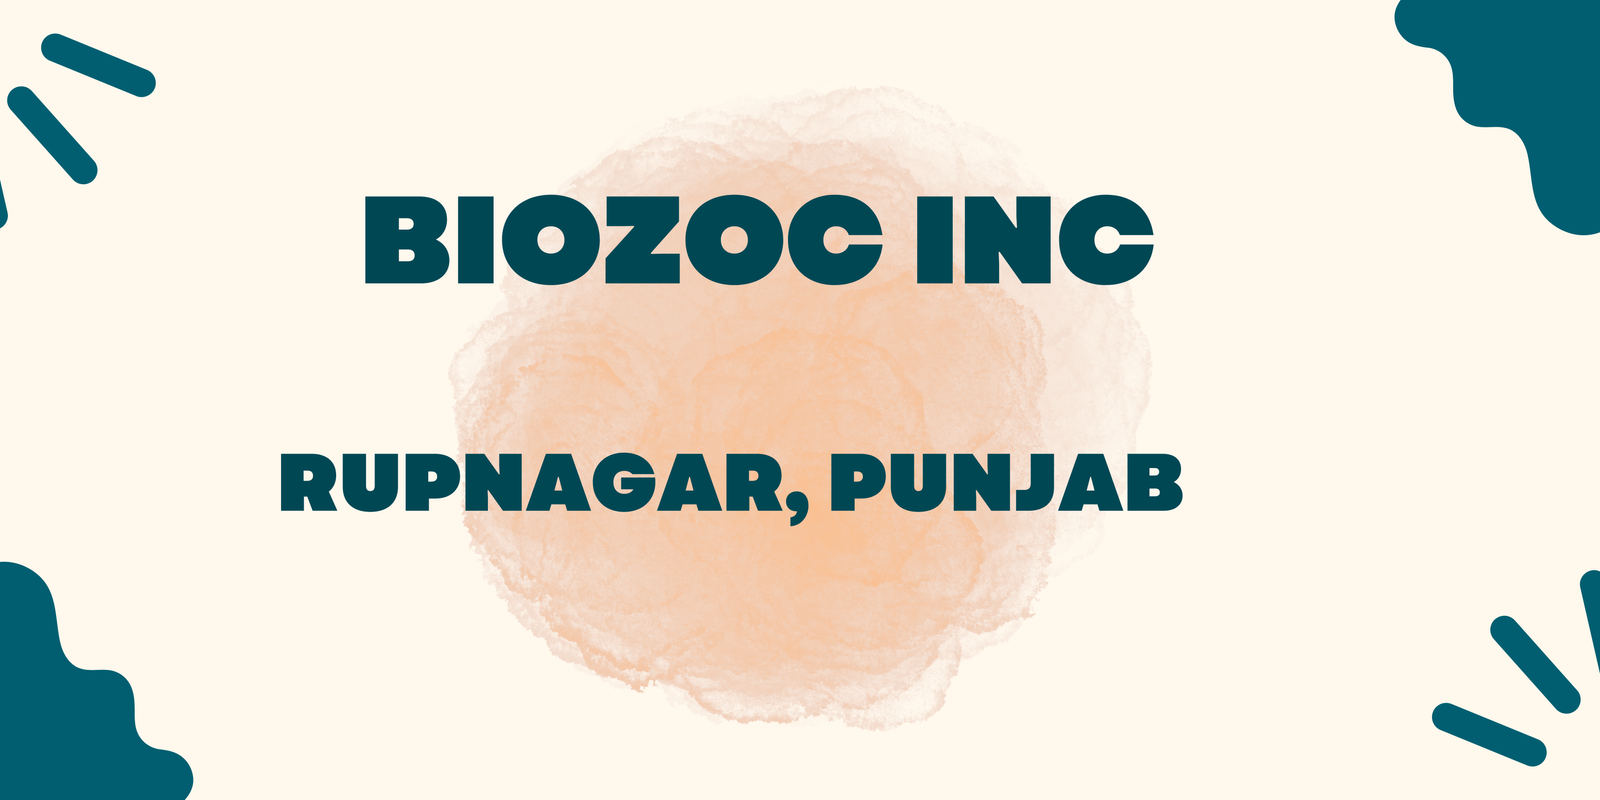 Biozoc INC